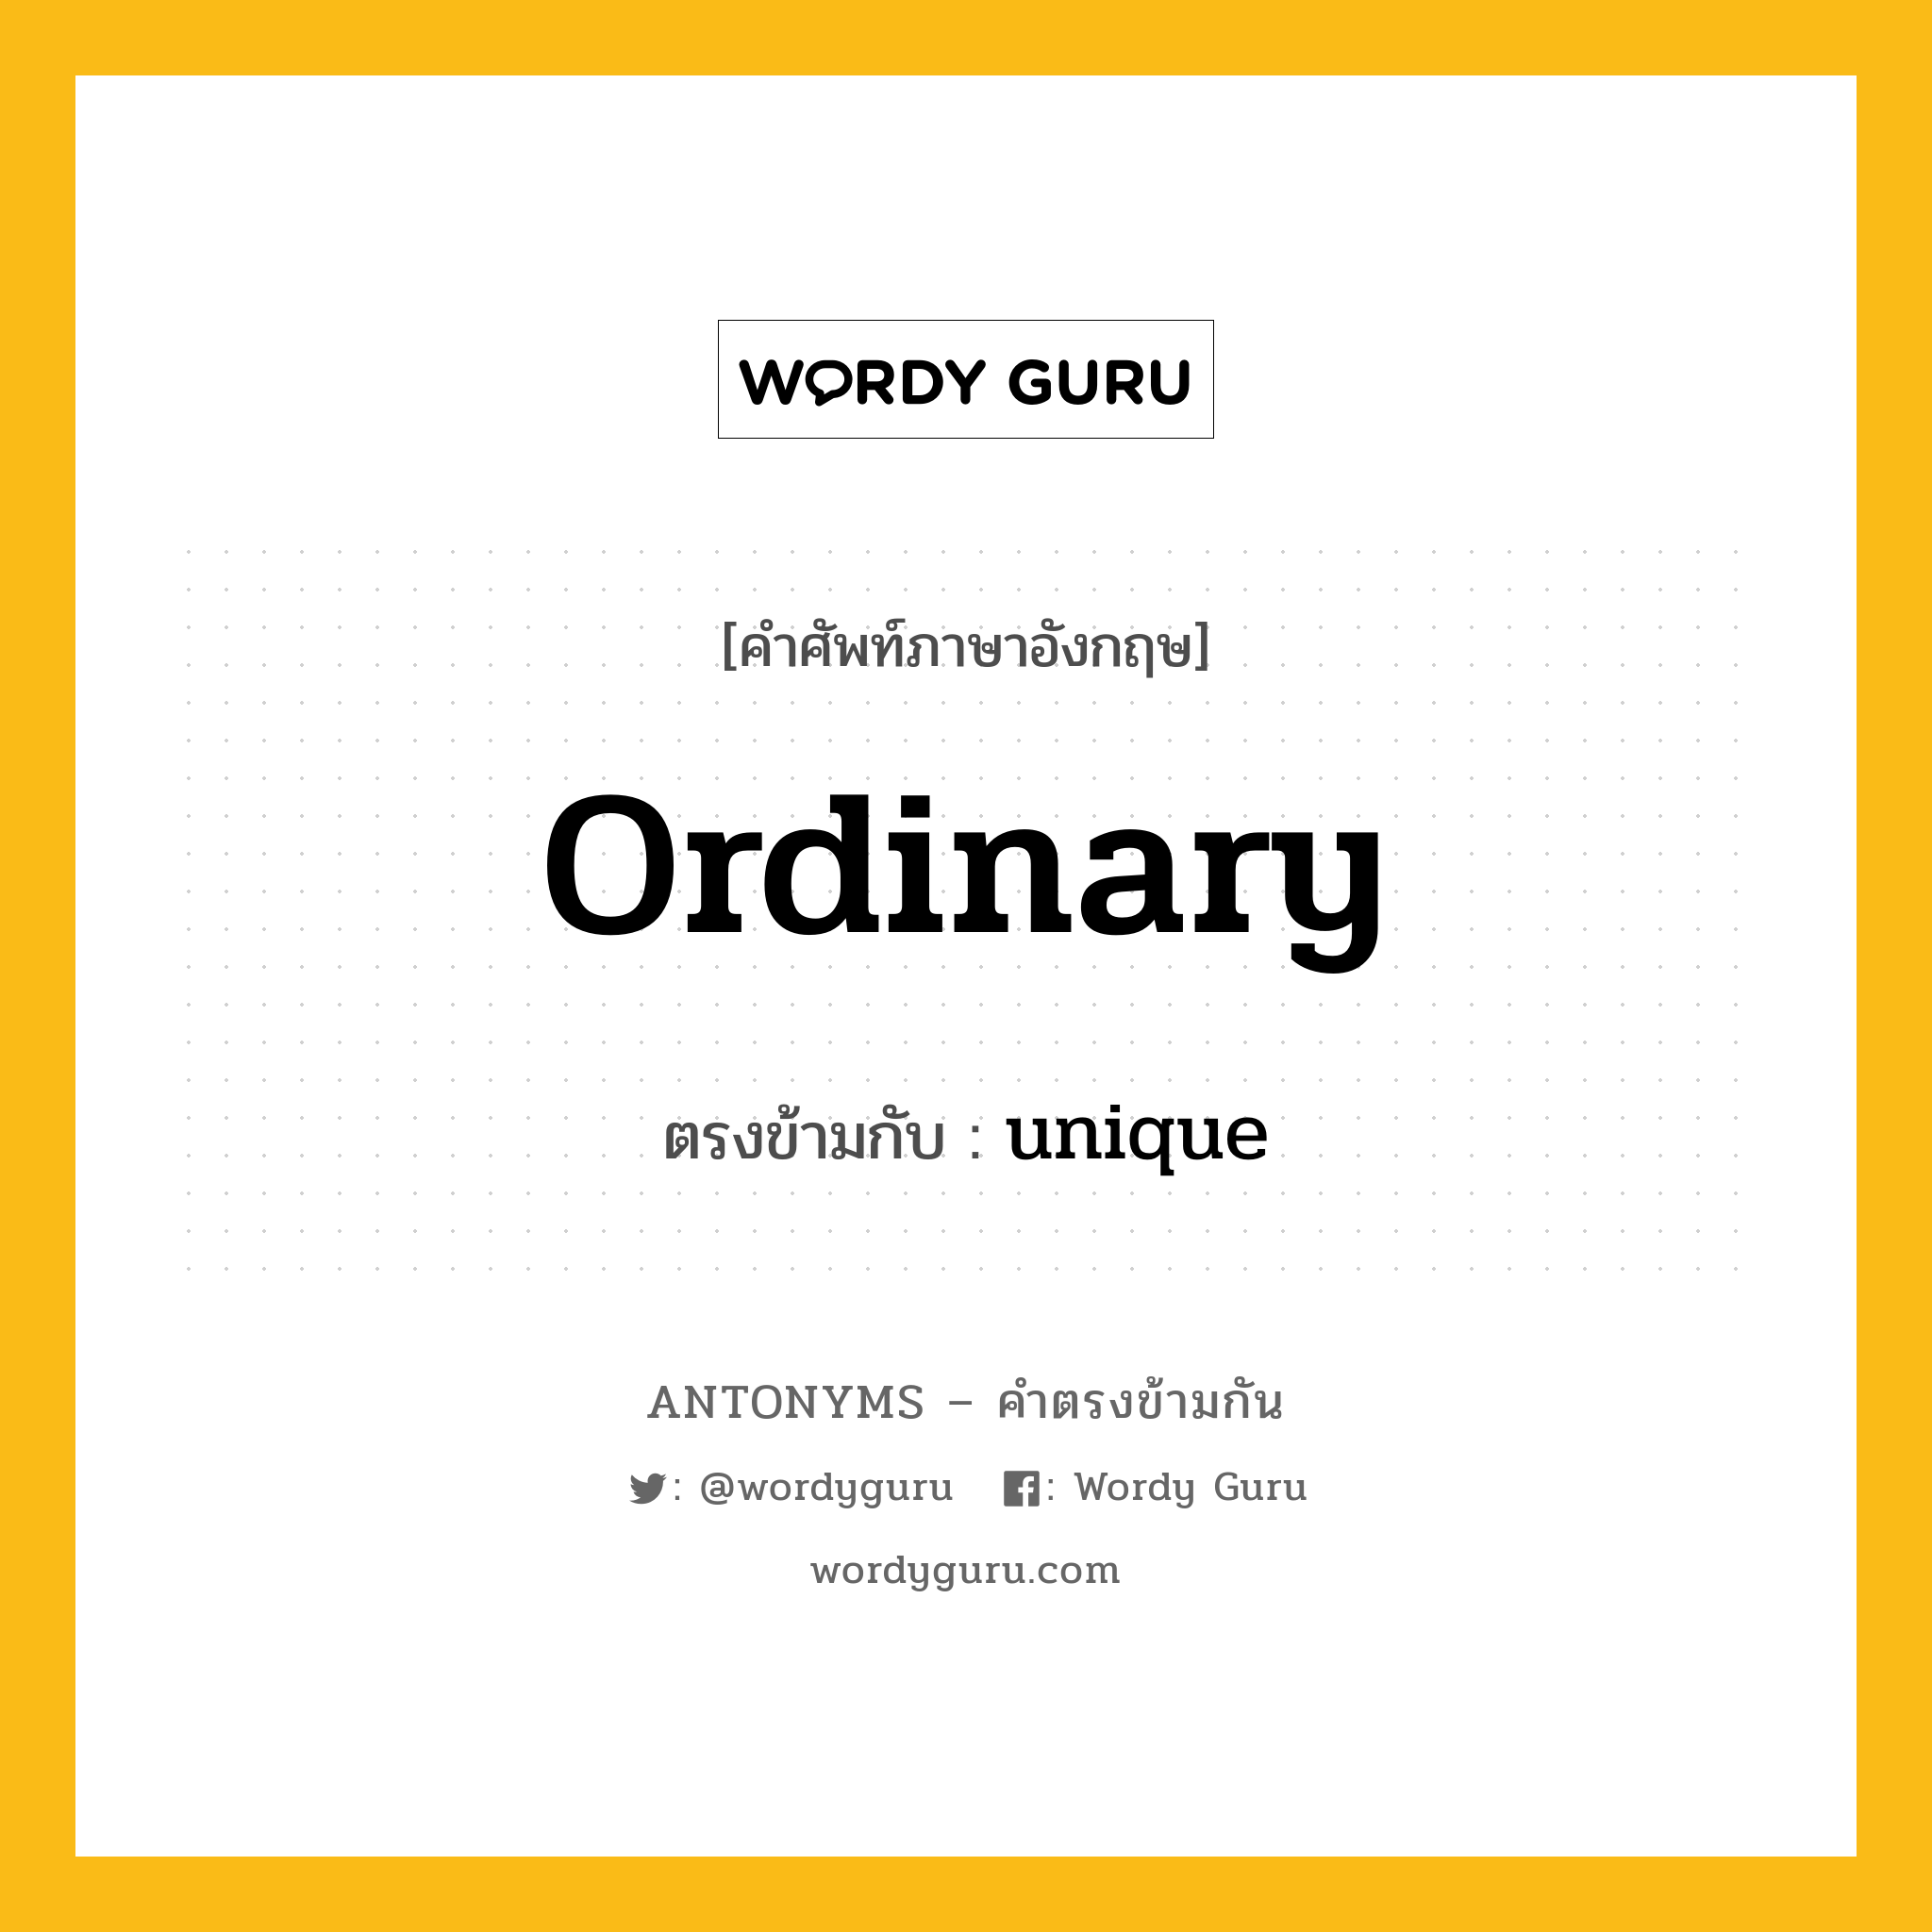 ordinary เป็นคำตรงข้ามกับคำไหนบ้าง?, คำศัพท์ภาษาอังกฤษ ordinary ตรงข้ามกับ unique หมวด unique